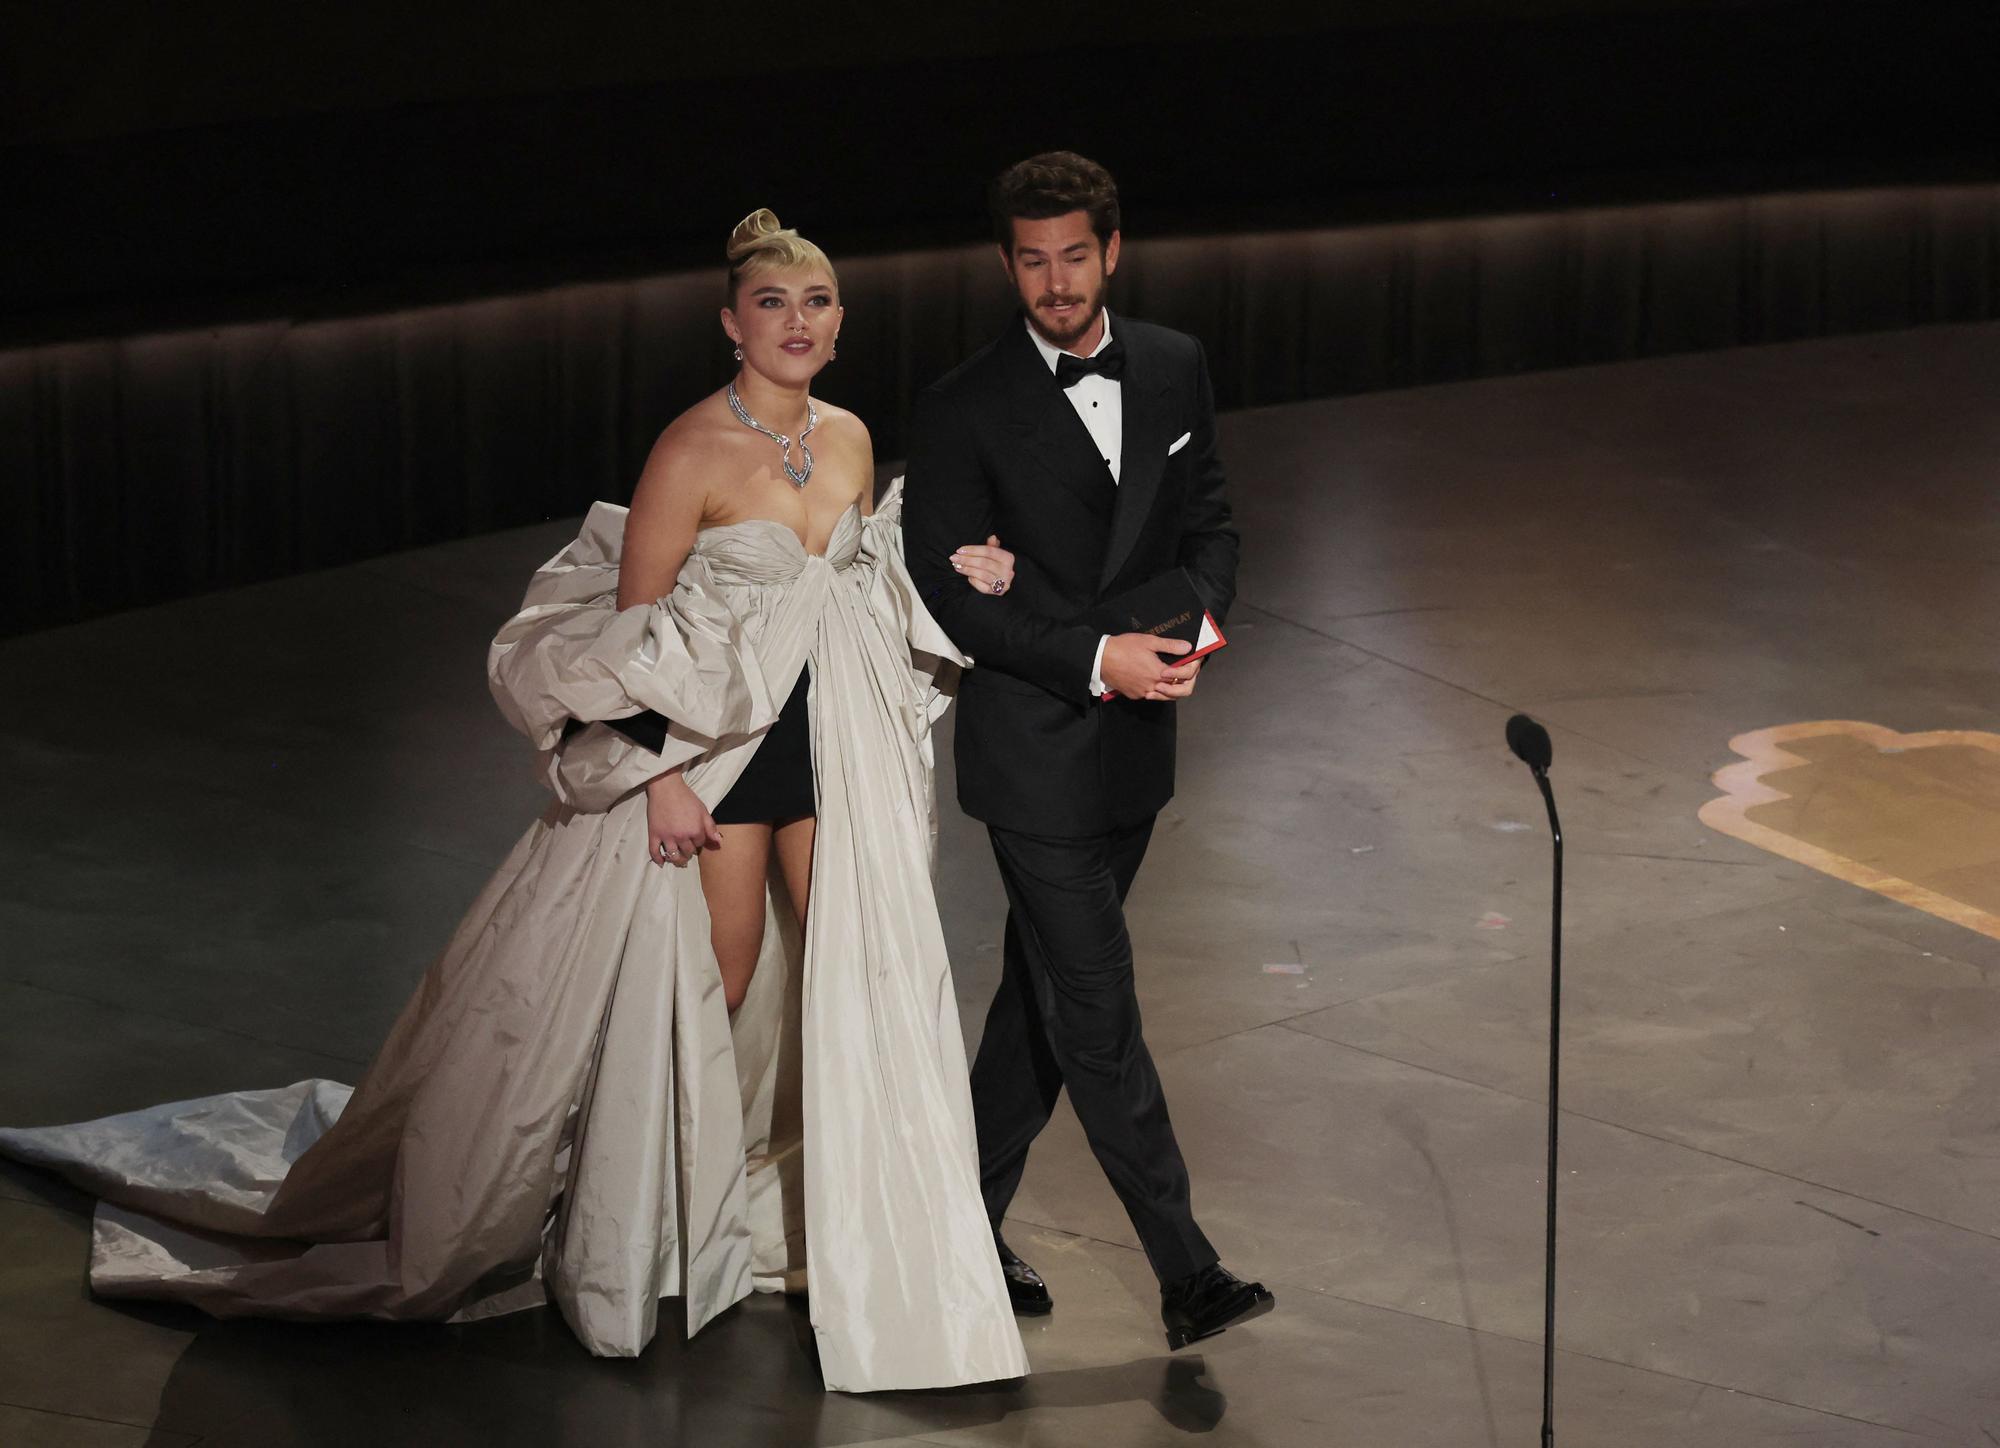 95th Academy Awards - Oscars Show - Hollywood